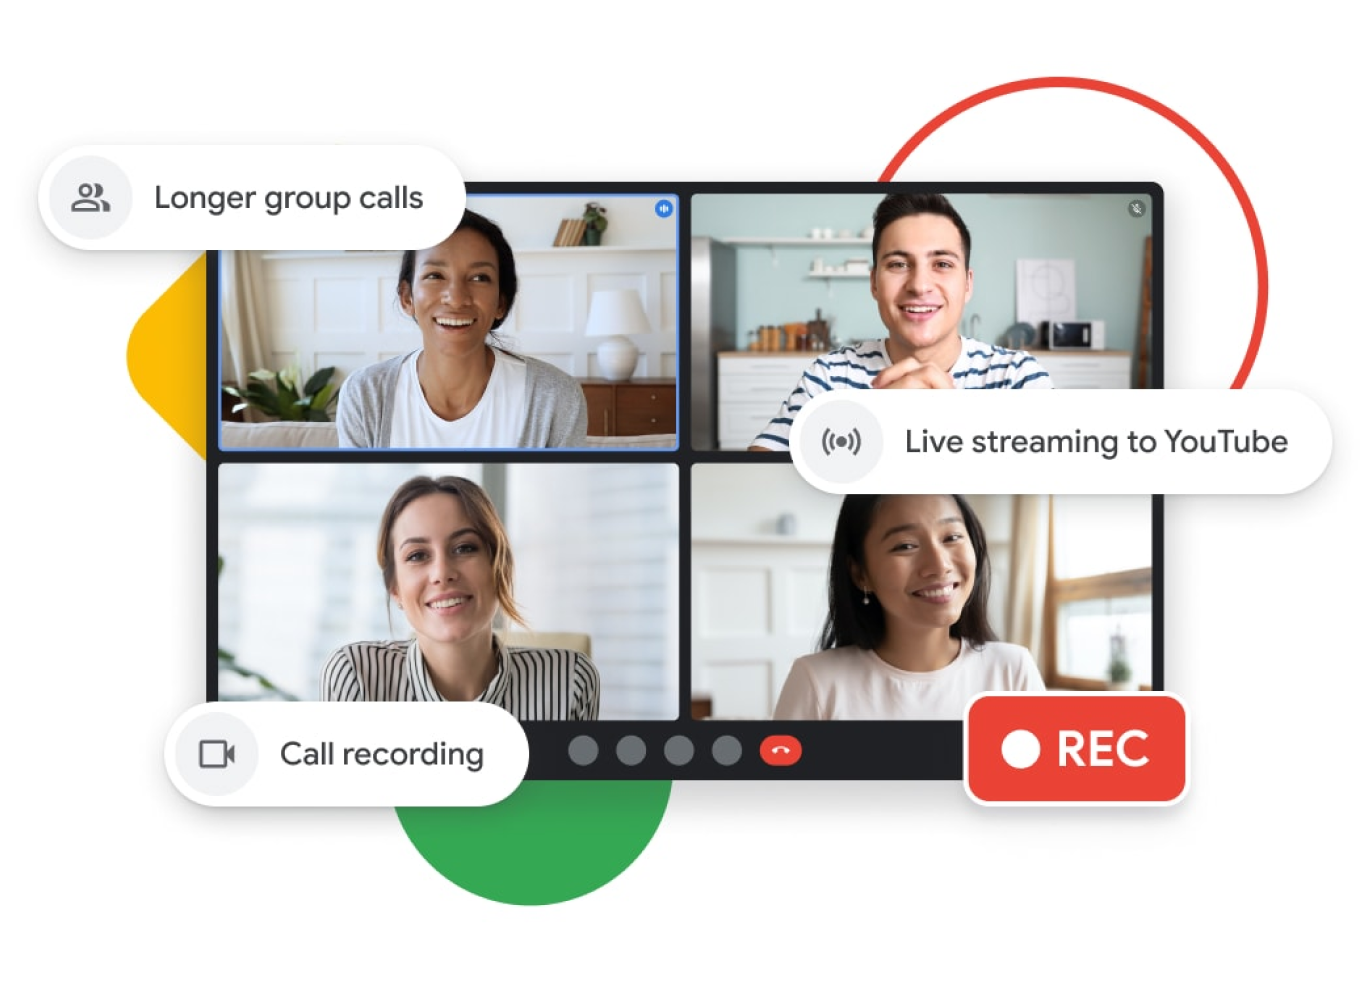 איור גרפי של שיחה ב-Google Meet עם שיחות קבוצתיות ארוכות יותר, סטרימינג בשידור חי ב-YouTube ותכונות של הקלטת השיחות.